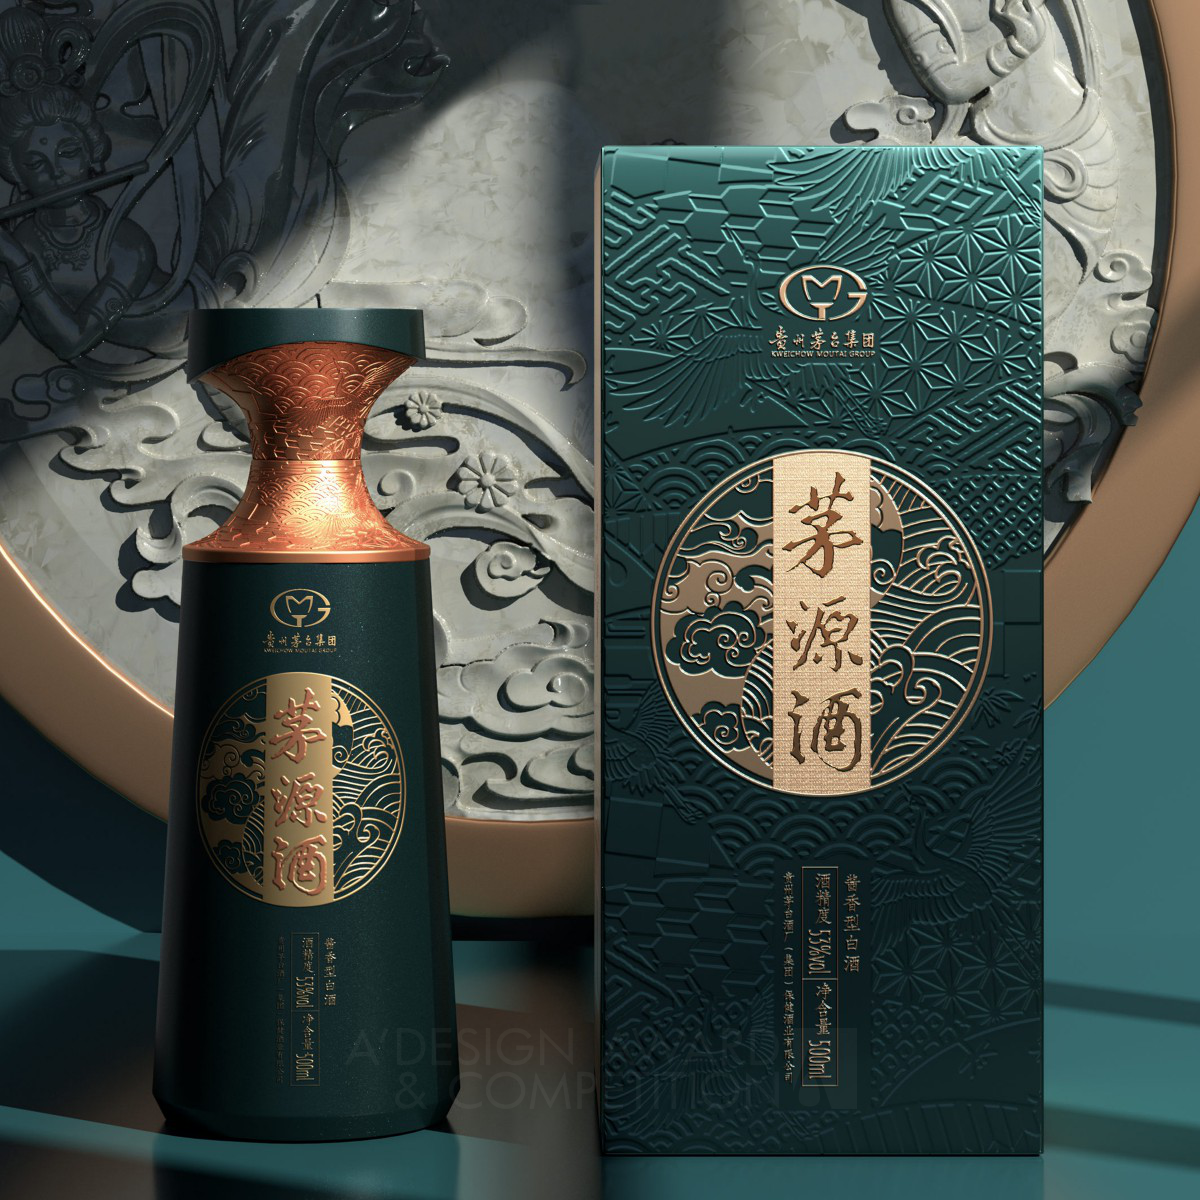 Guizhou Moutai Maoyuan Jiu Liquor Packaging by Luo Heng